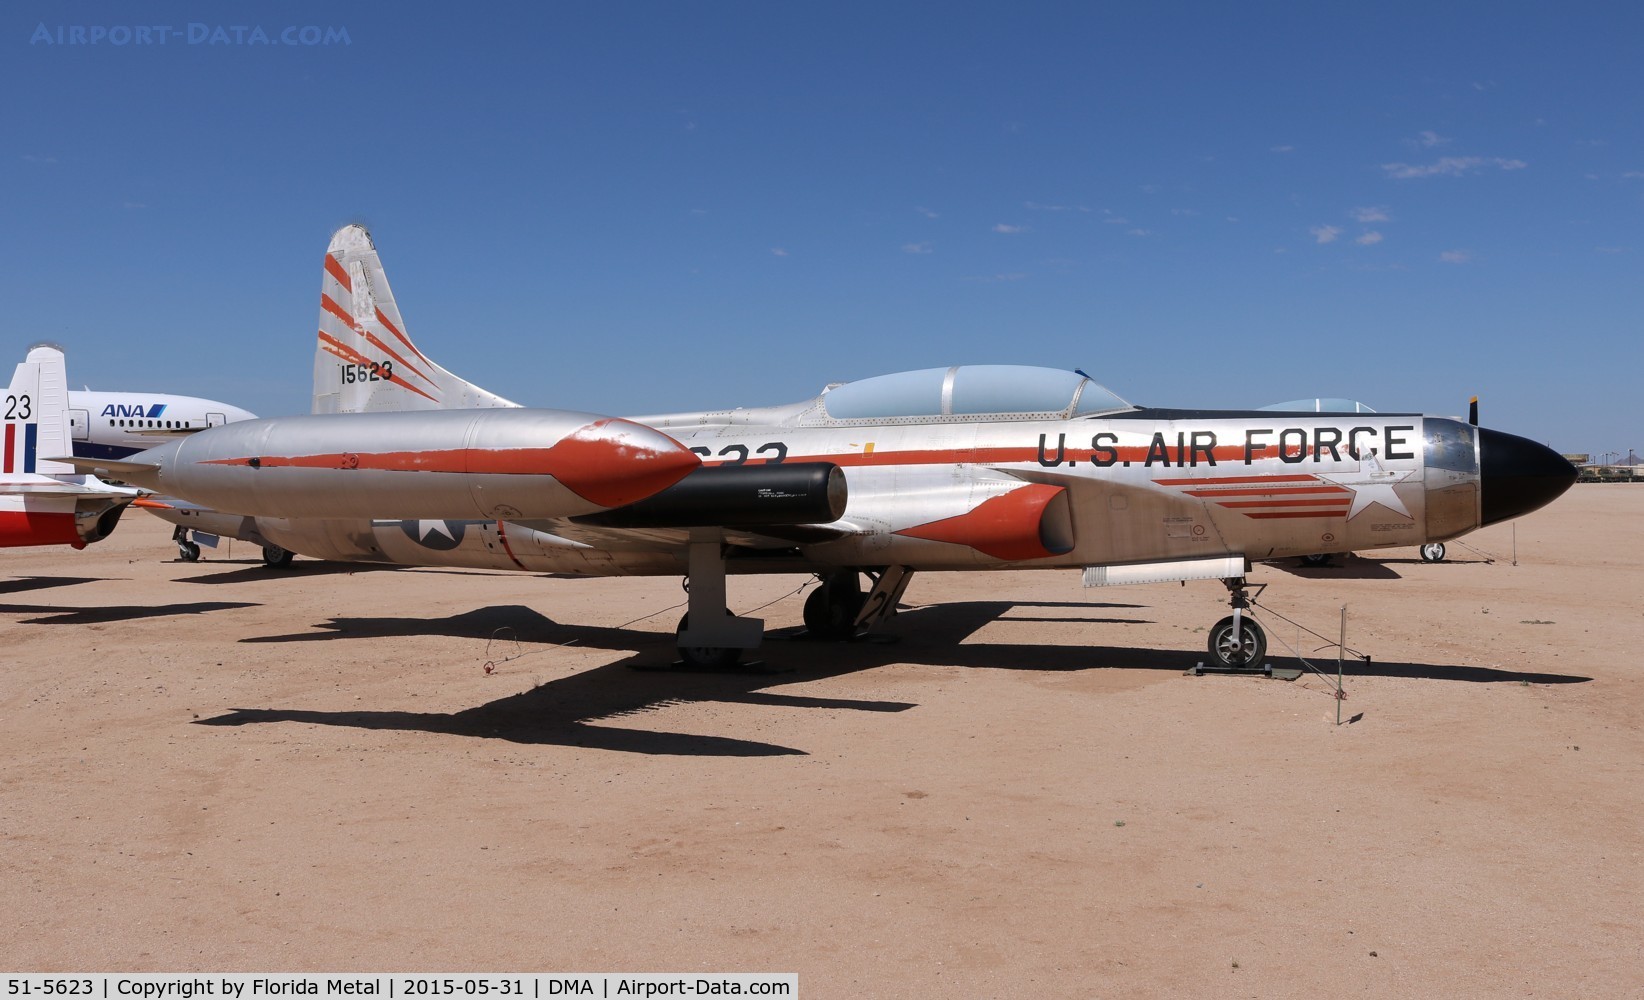 51-5623, 1951 Lockheed F-94C Starfire C/N 880-8219, F-94C